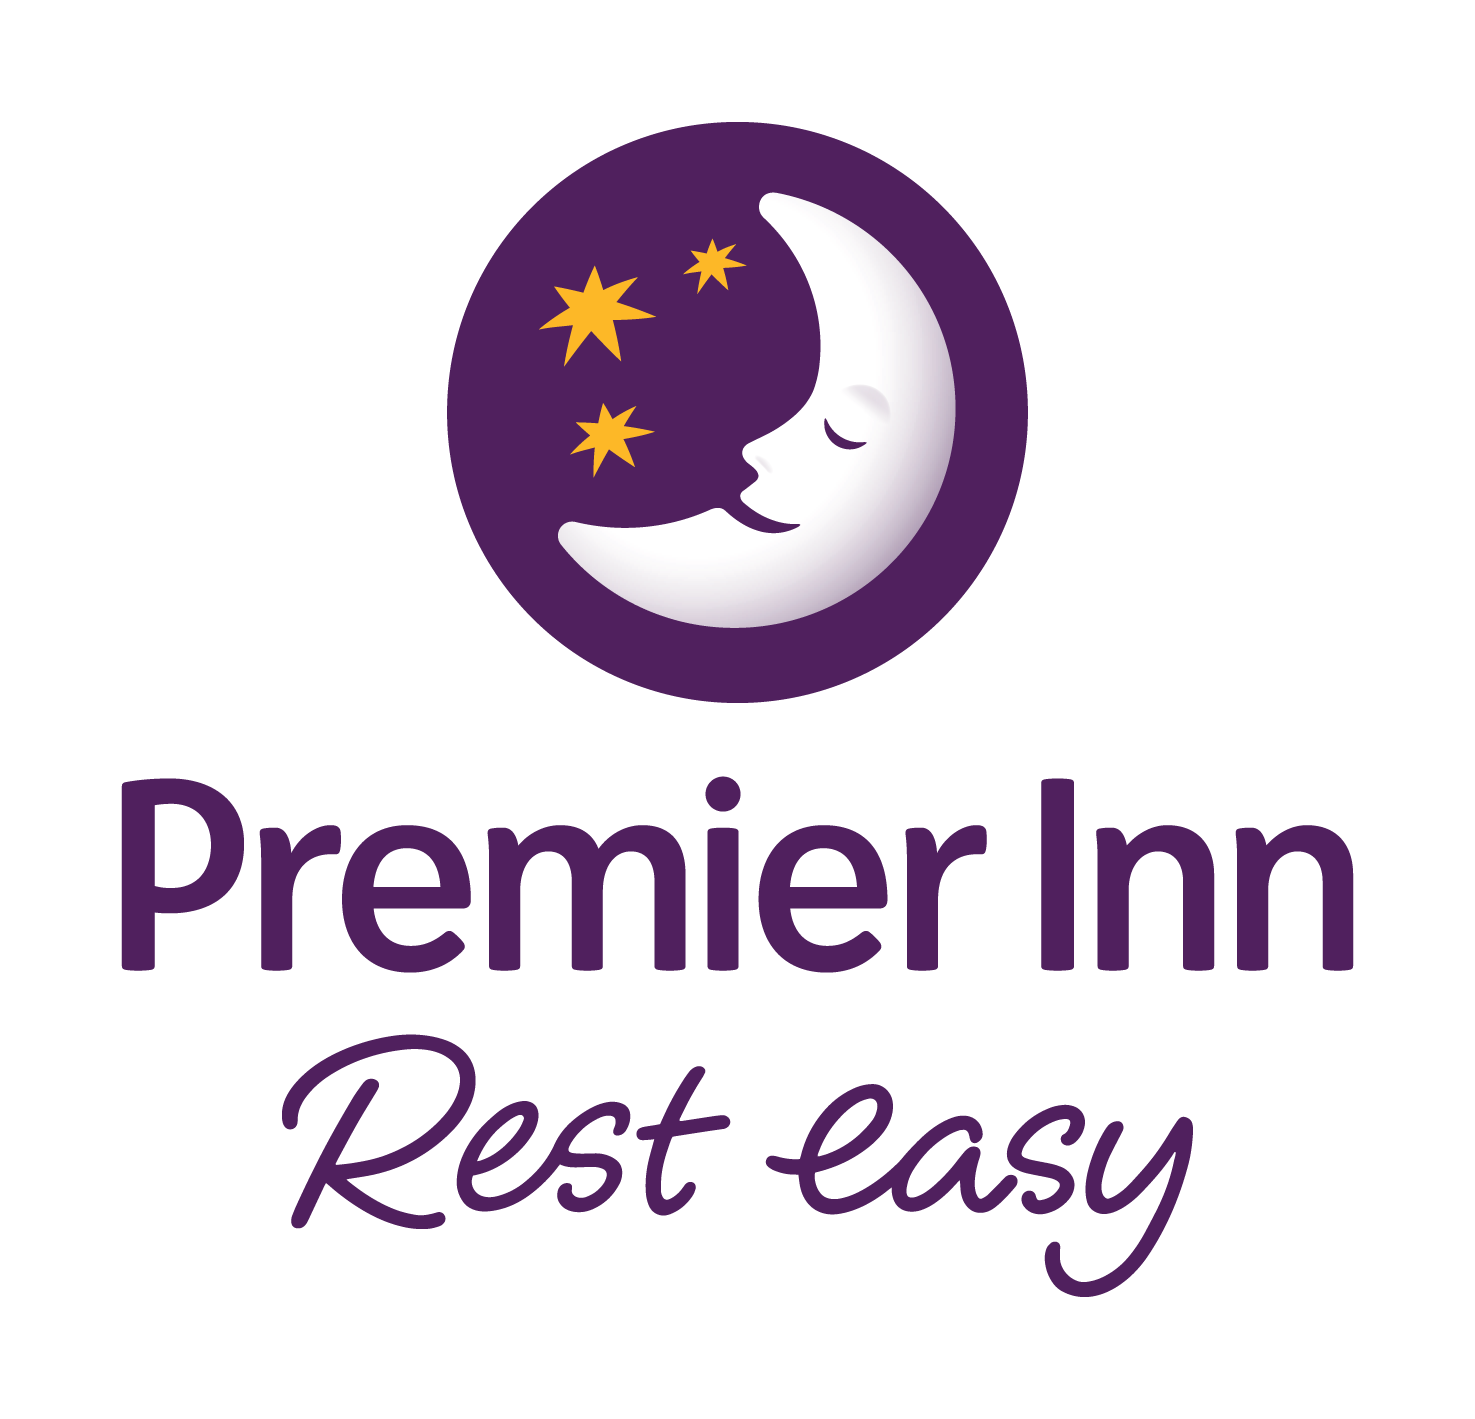 Premier Inn Rest easy logo